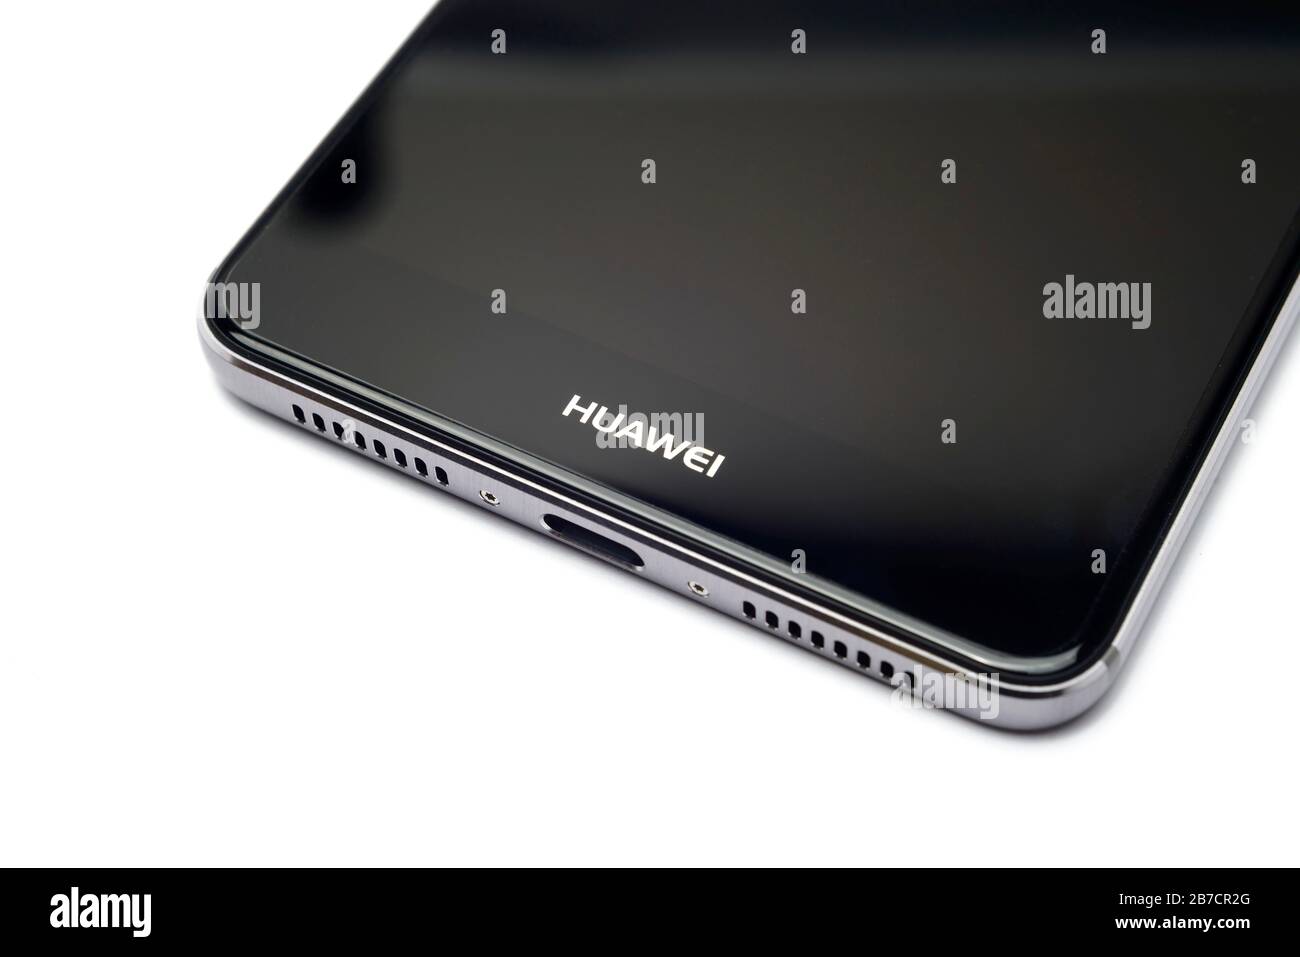 Lo smartphone Huawei Mate 9 è isolato su sfondo bianco Foto Stock